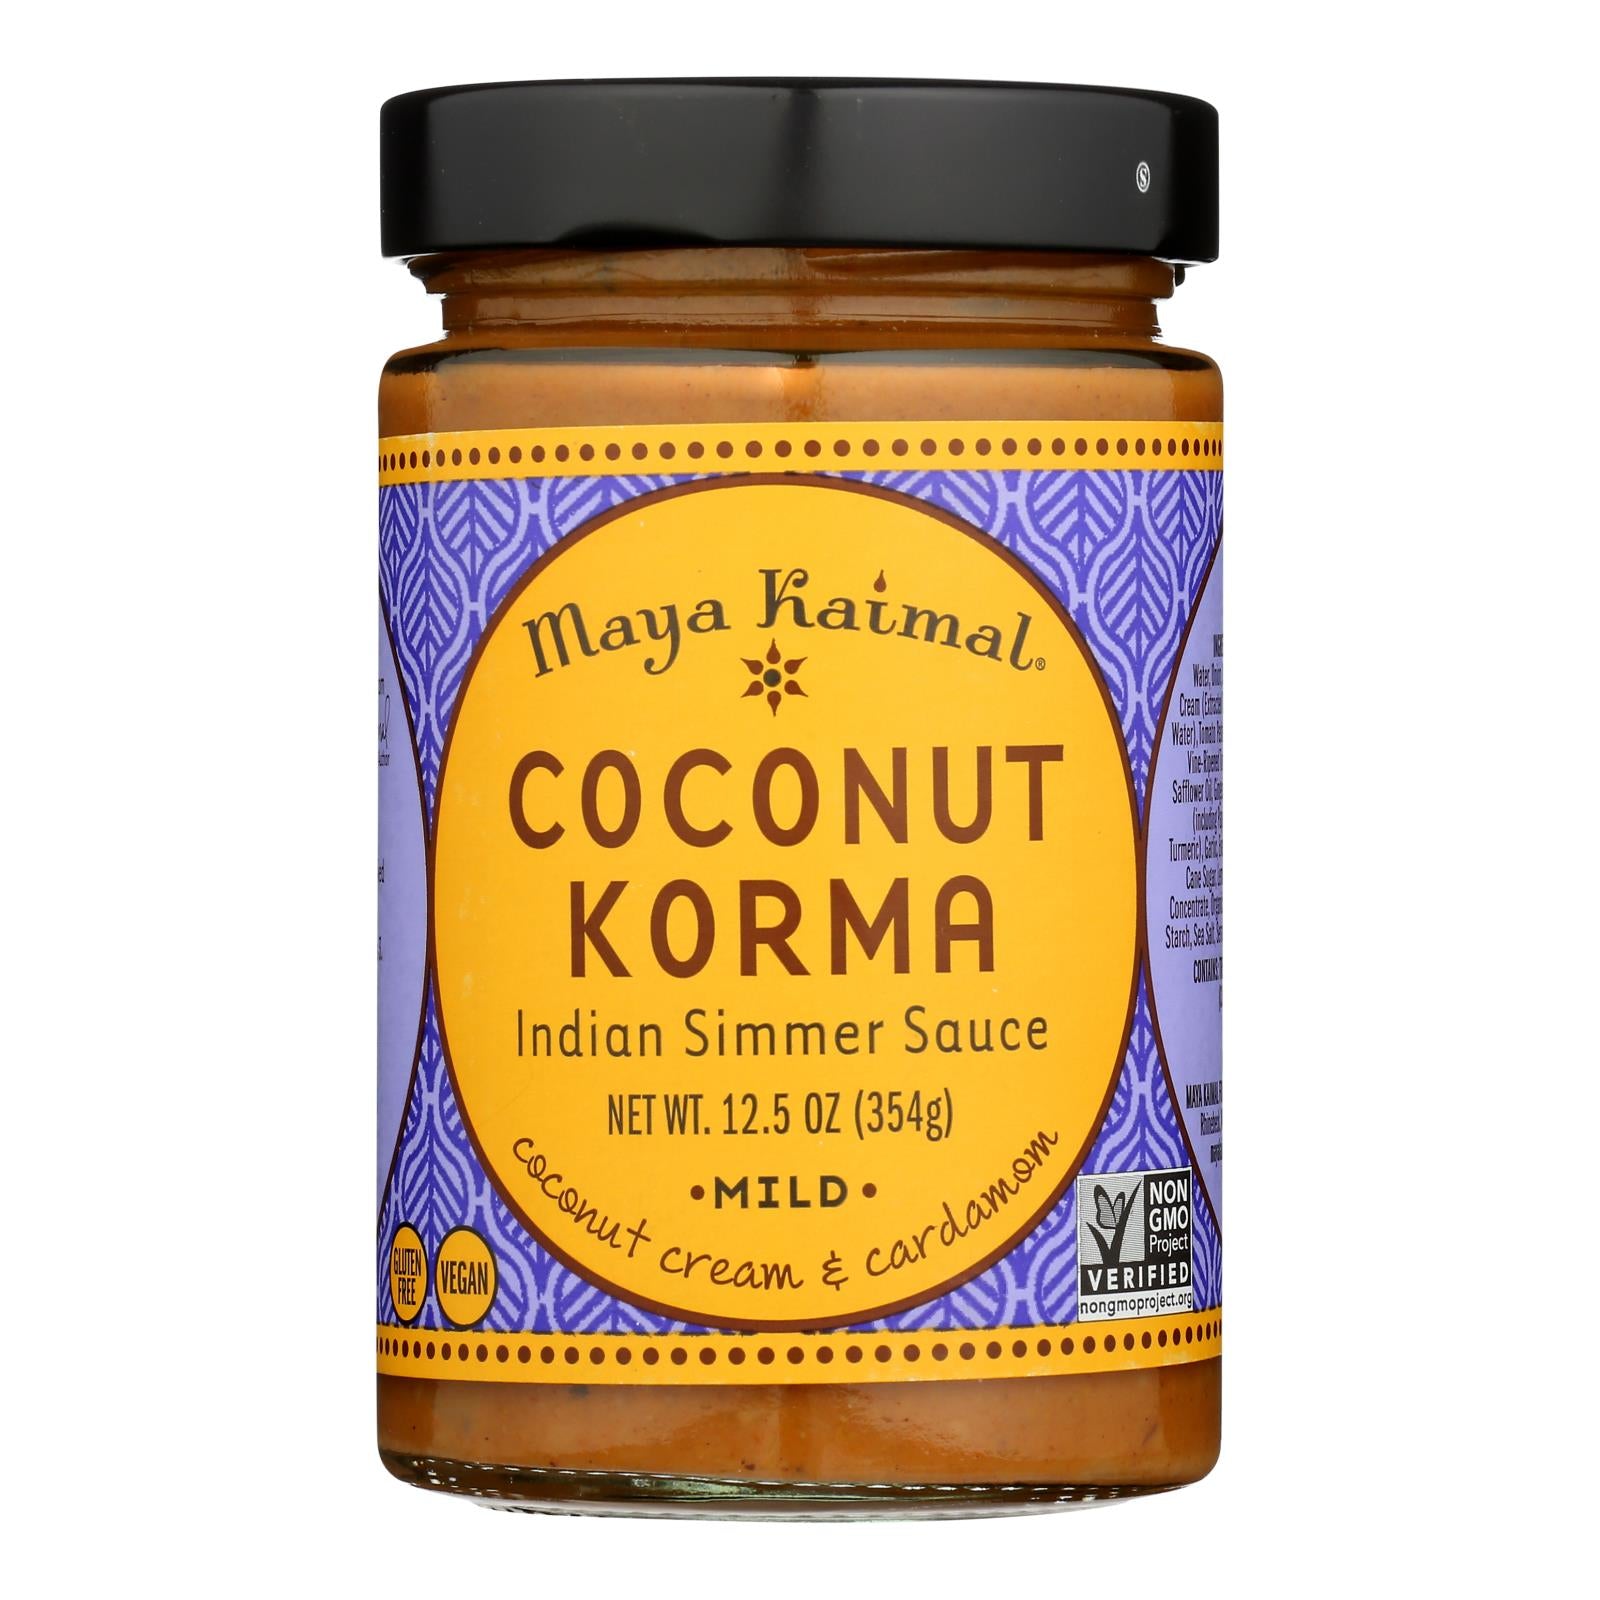 Maya Kaimal, Maya Kaimal - Smmr Sauce Coconut Korma - Carton de 6 - 12.5 OZ (Pack de 6)